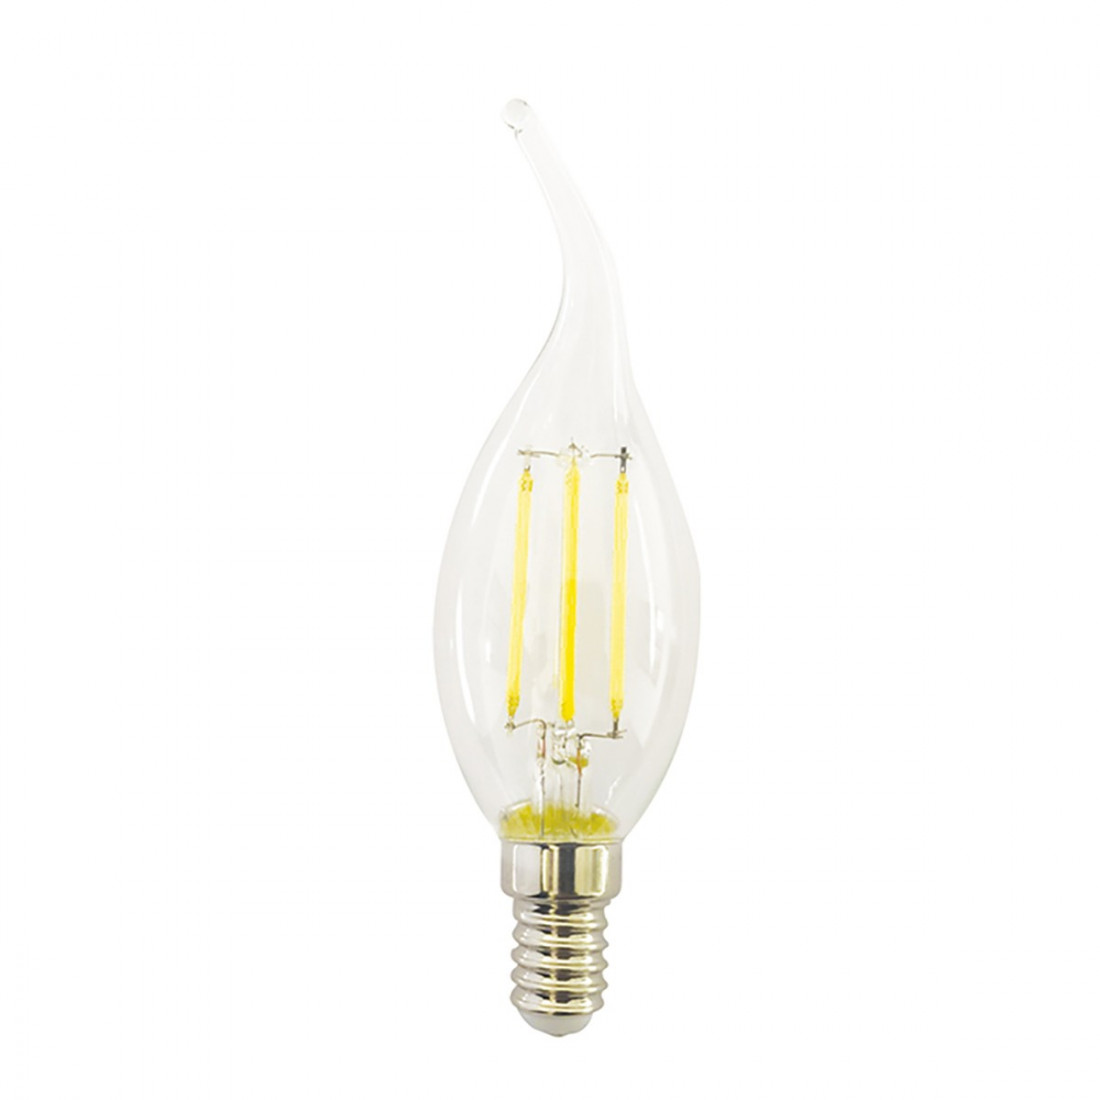 Pack 10 Ampoules GE-GLA280 E14 6W LED 360 ° verre transparent lumière chaude lumière naturelle olive souffle de vent